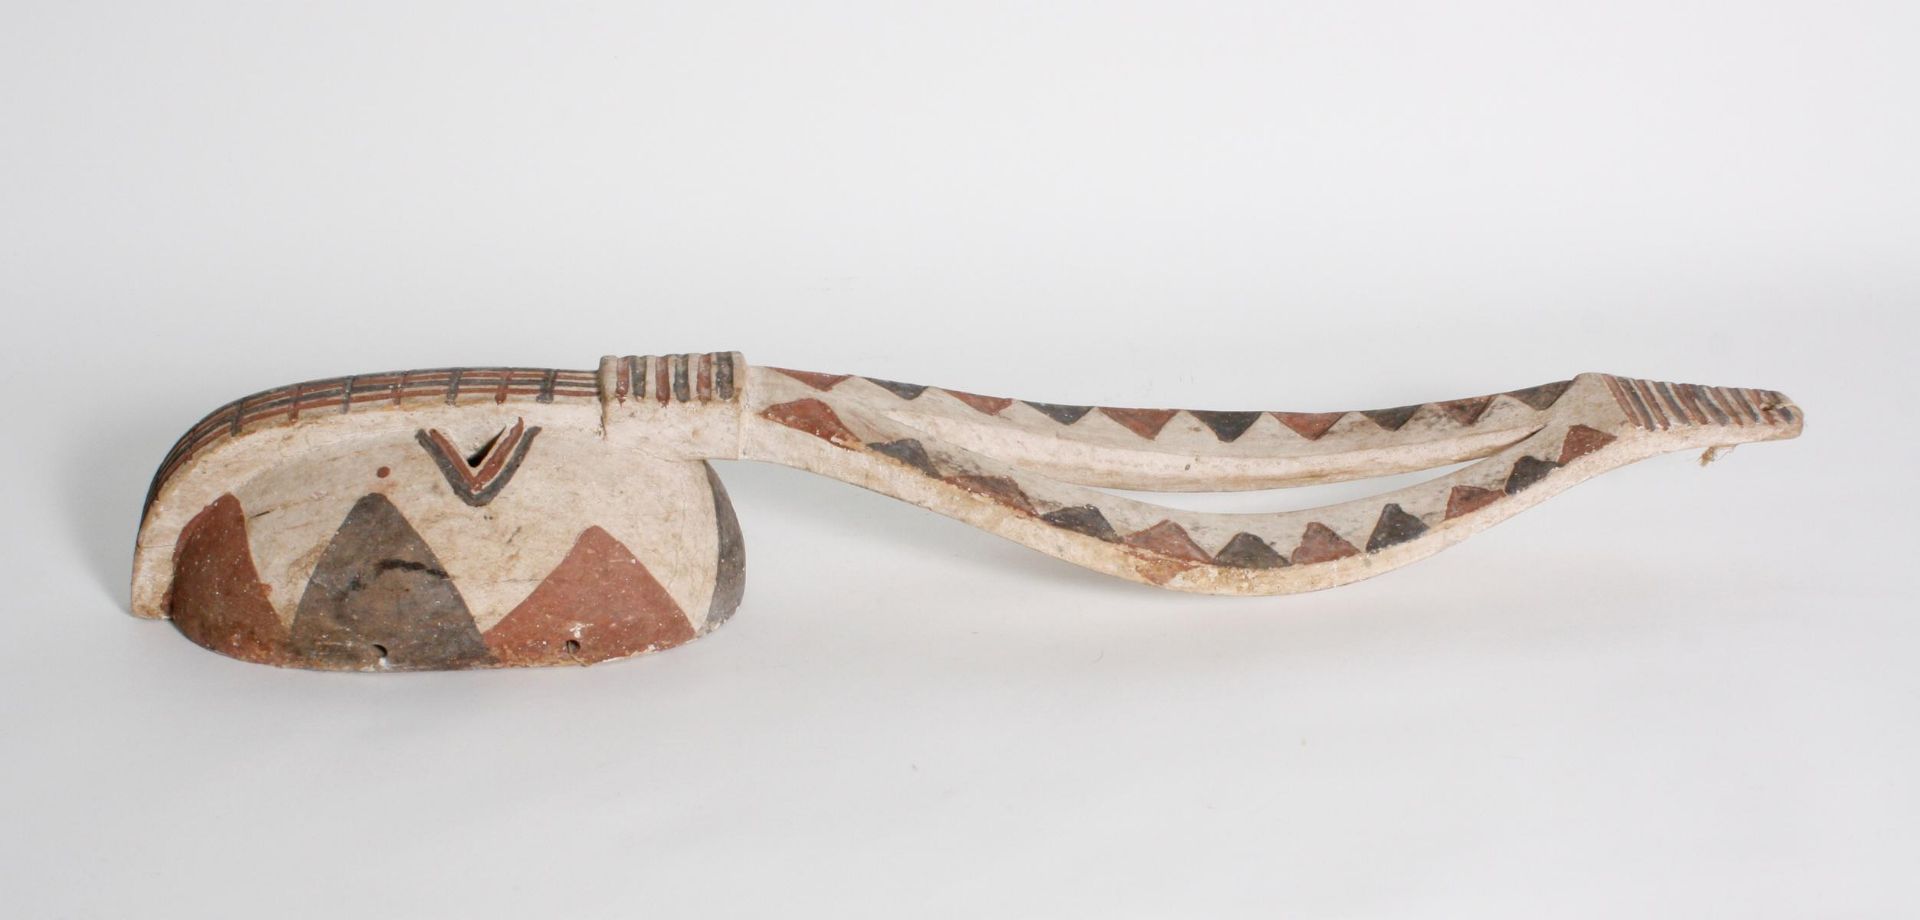 Antilopenmaske, Mossi, Burkina Faso, 2. Hälfte 20. Jh.Aus einem Stück Holz geschnitzte - Bild 4 aus 4